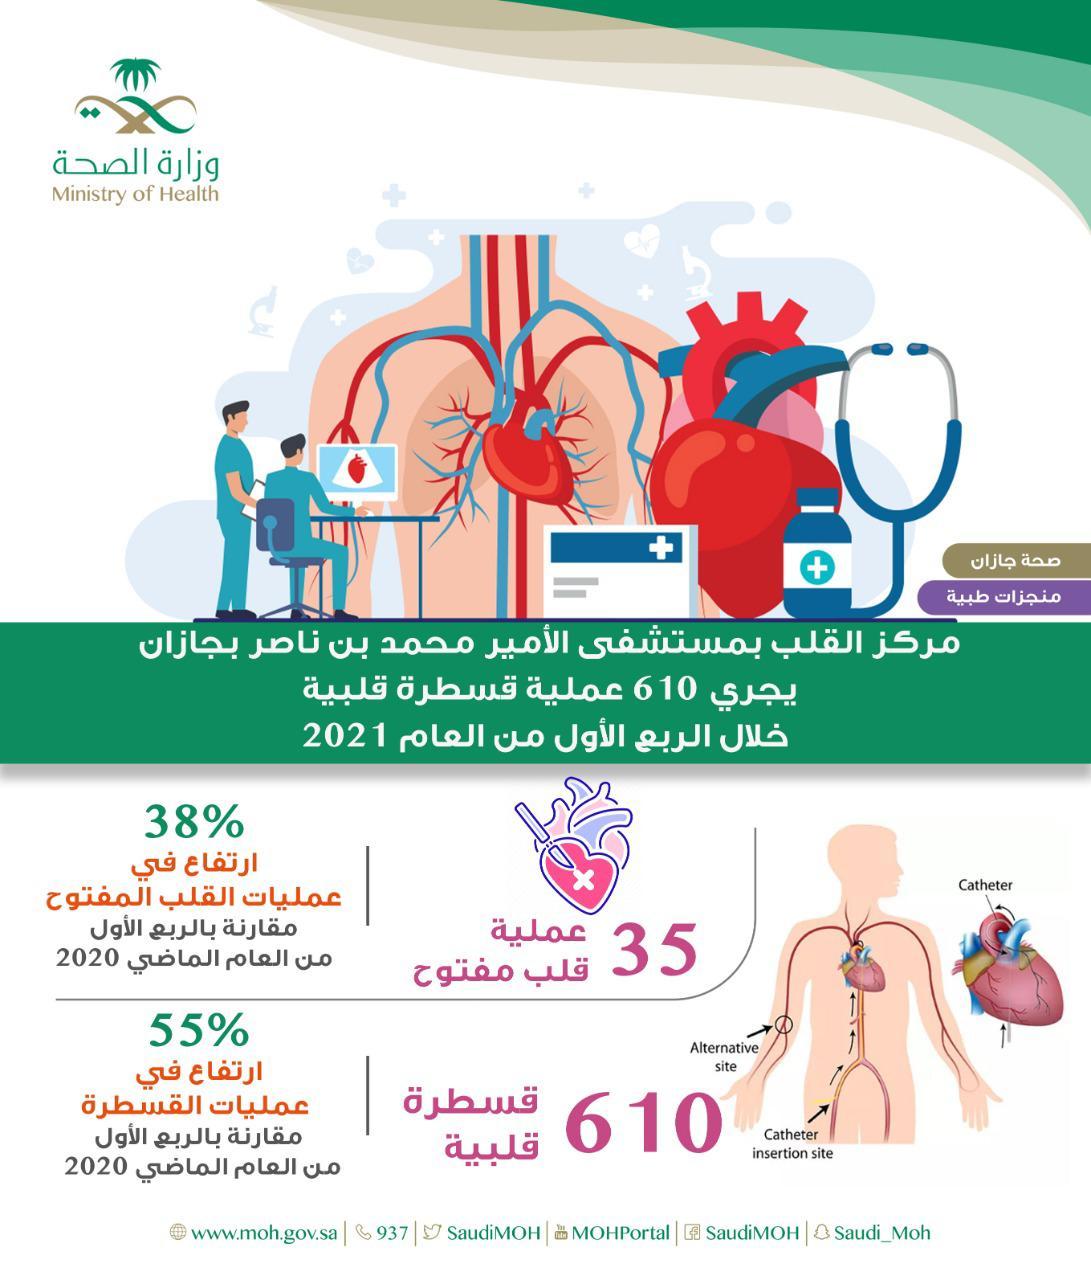 مركز القلب بمستشفى الأمير محمد بن ناصر بجازان يجري 610 عملية قسطرة قلبية خلال الربع الأول من العام 2021